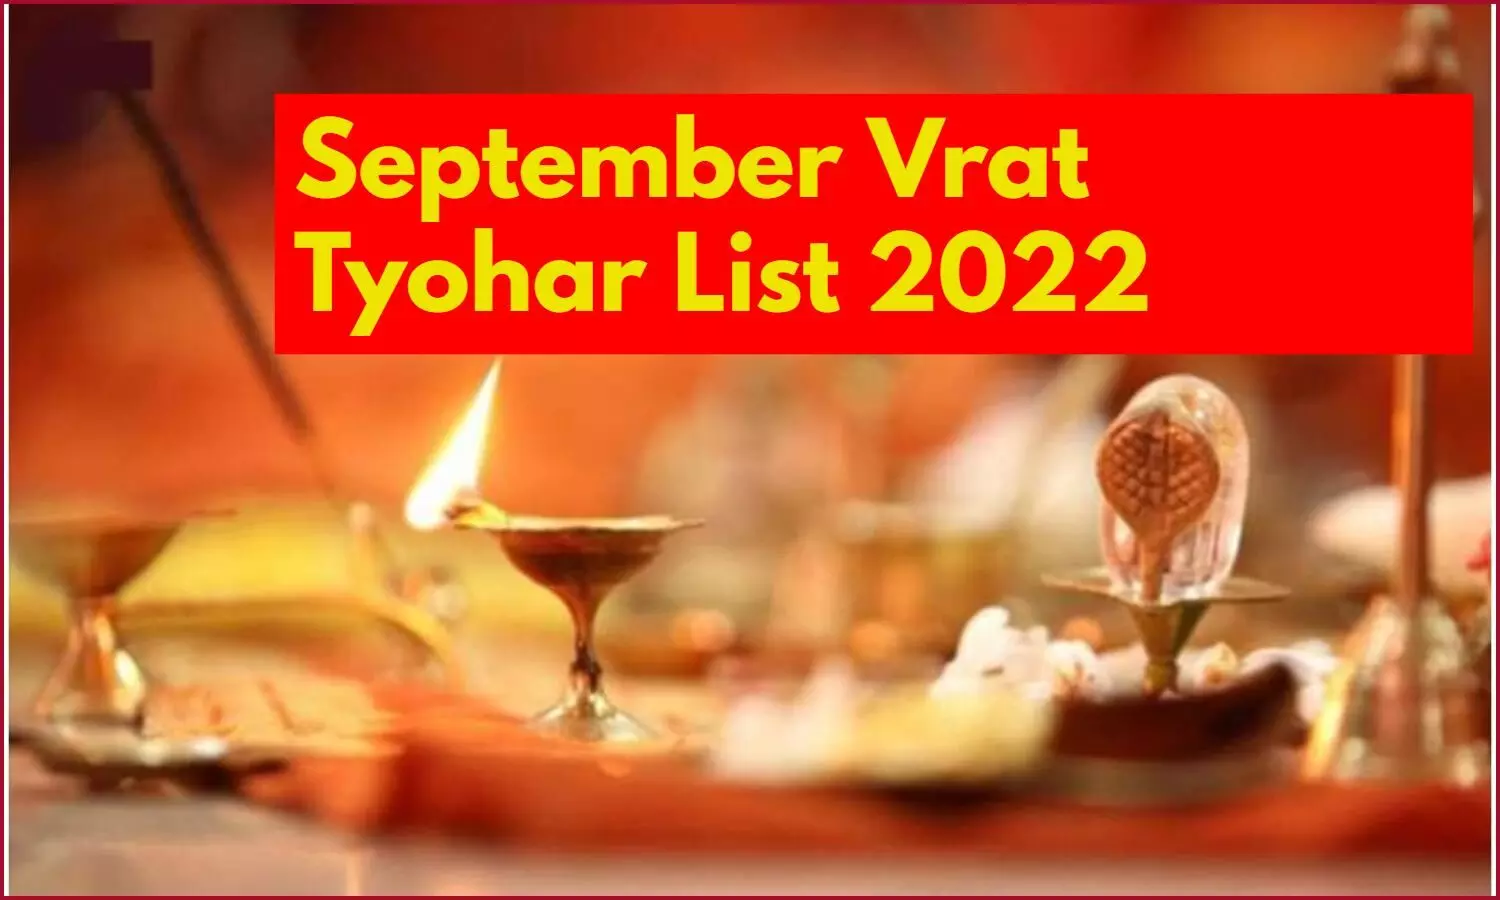 September Vrat Tyohar List 2022